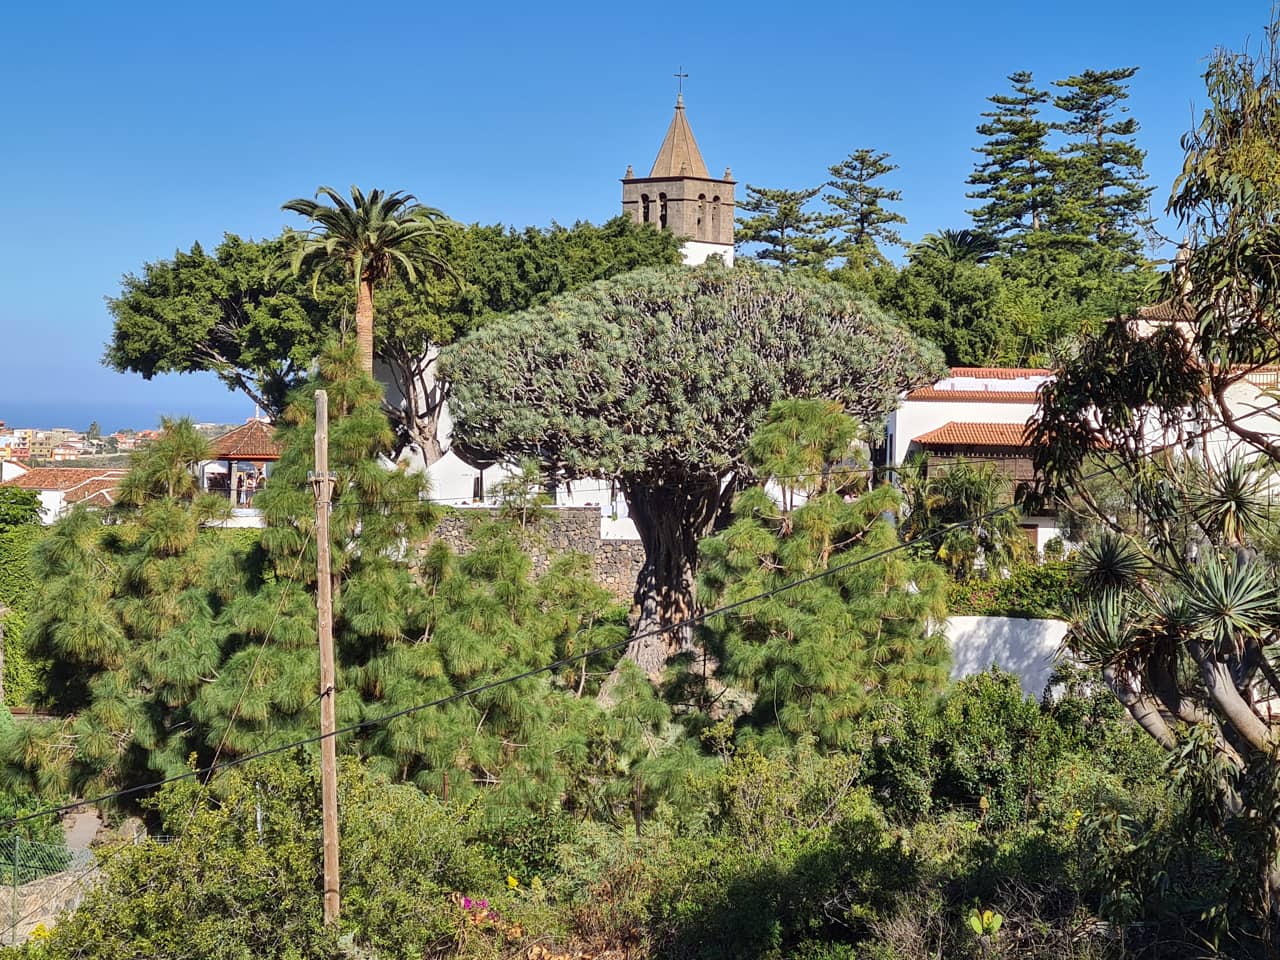 der uralte Drachenbaum von Icod de los Vinos auf Teneriffa, Spanien